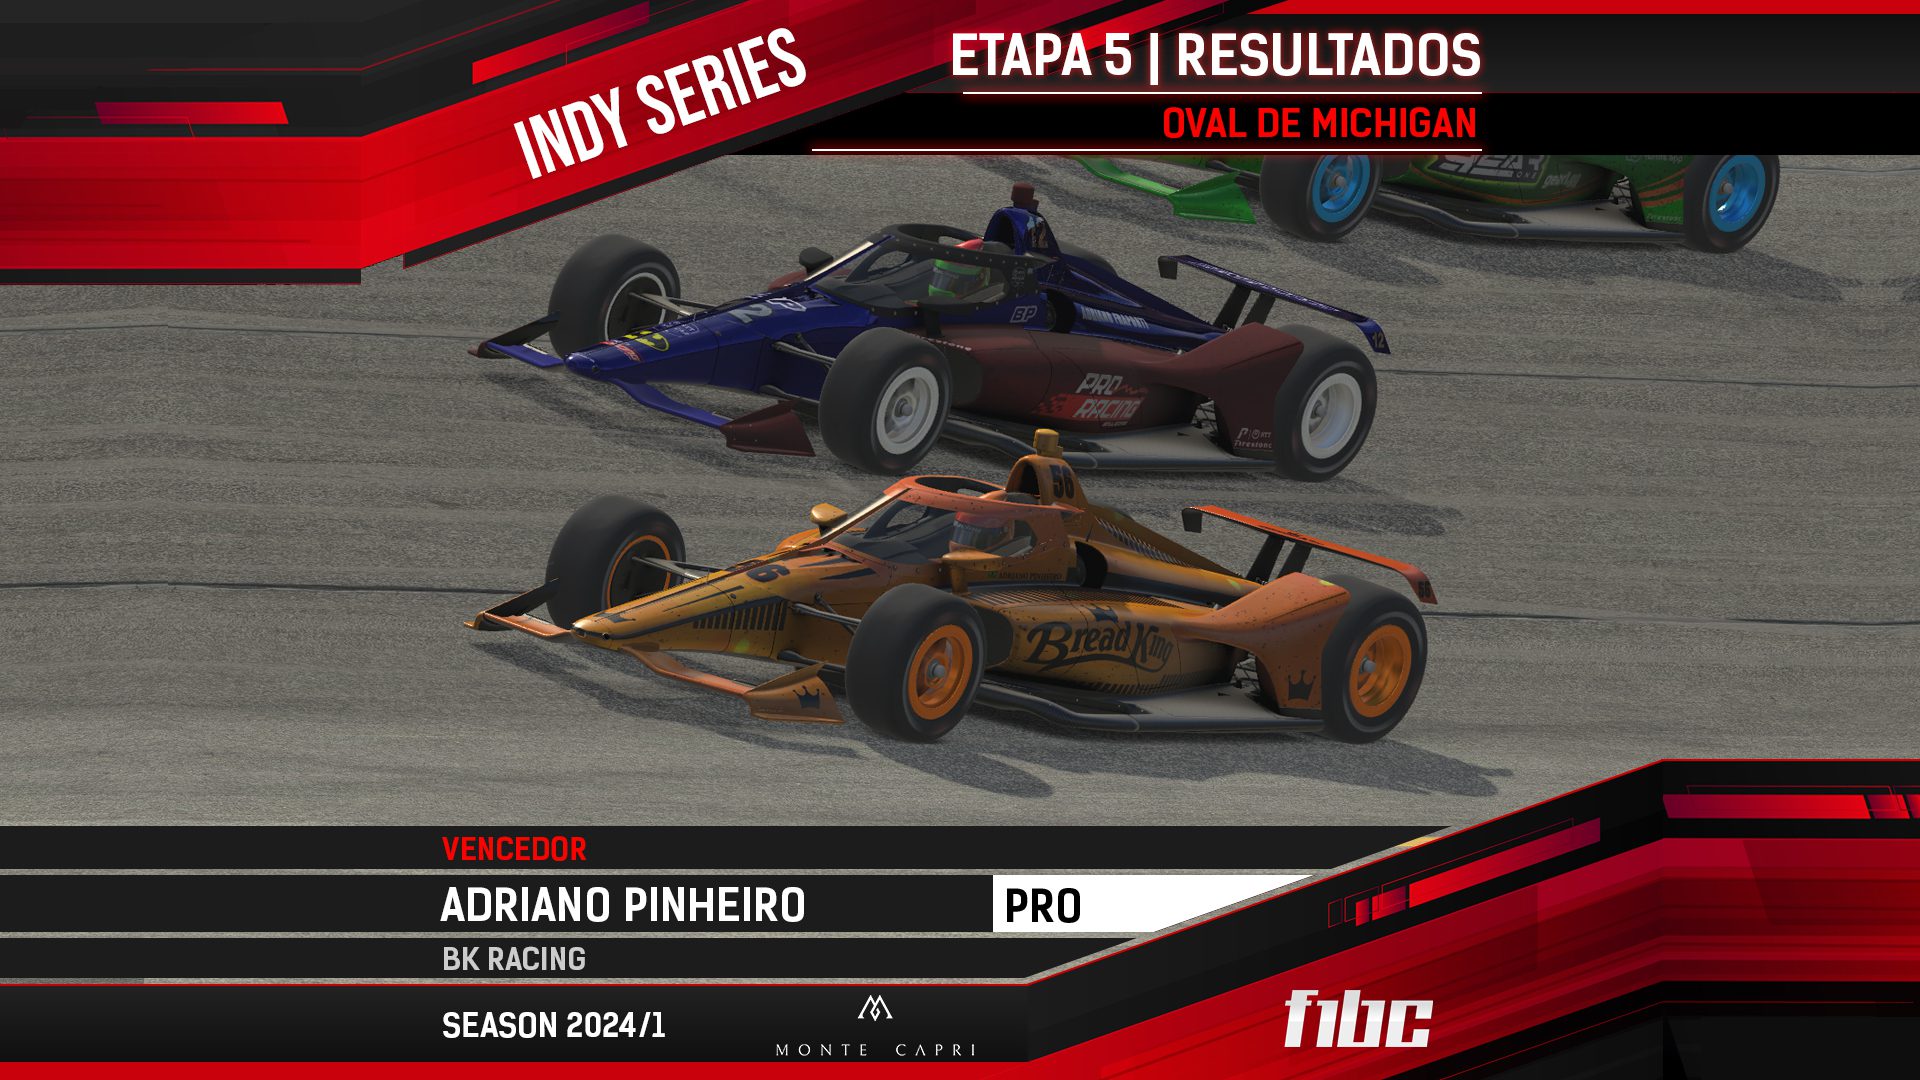 Monte Capri Indy Series: Adriano Pinheiro é campeão invicto após Michigan